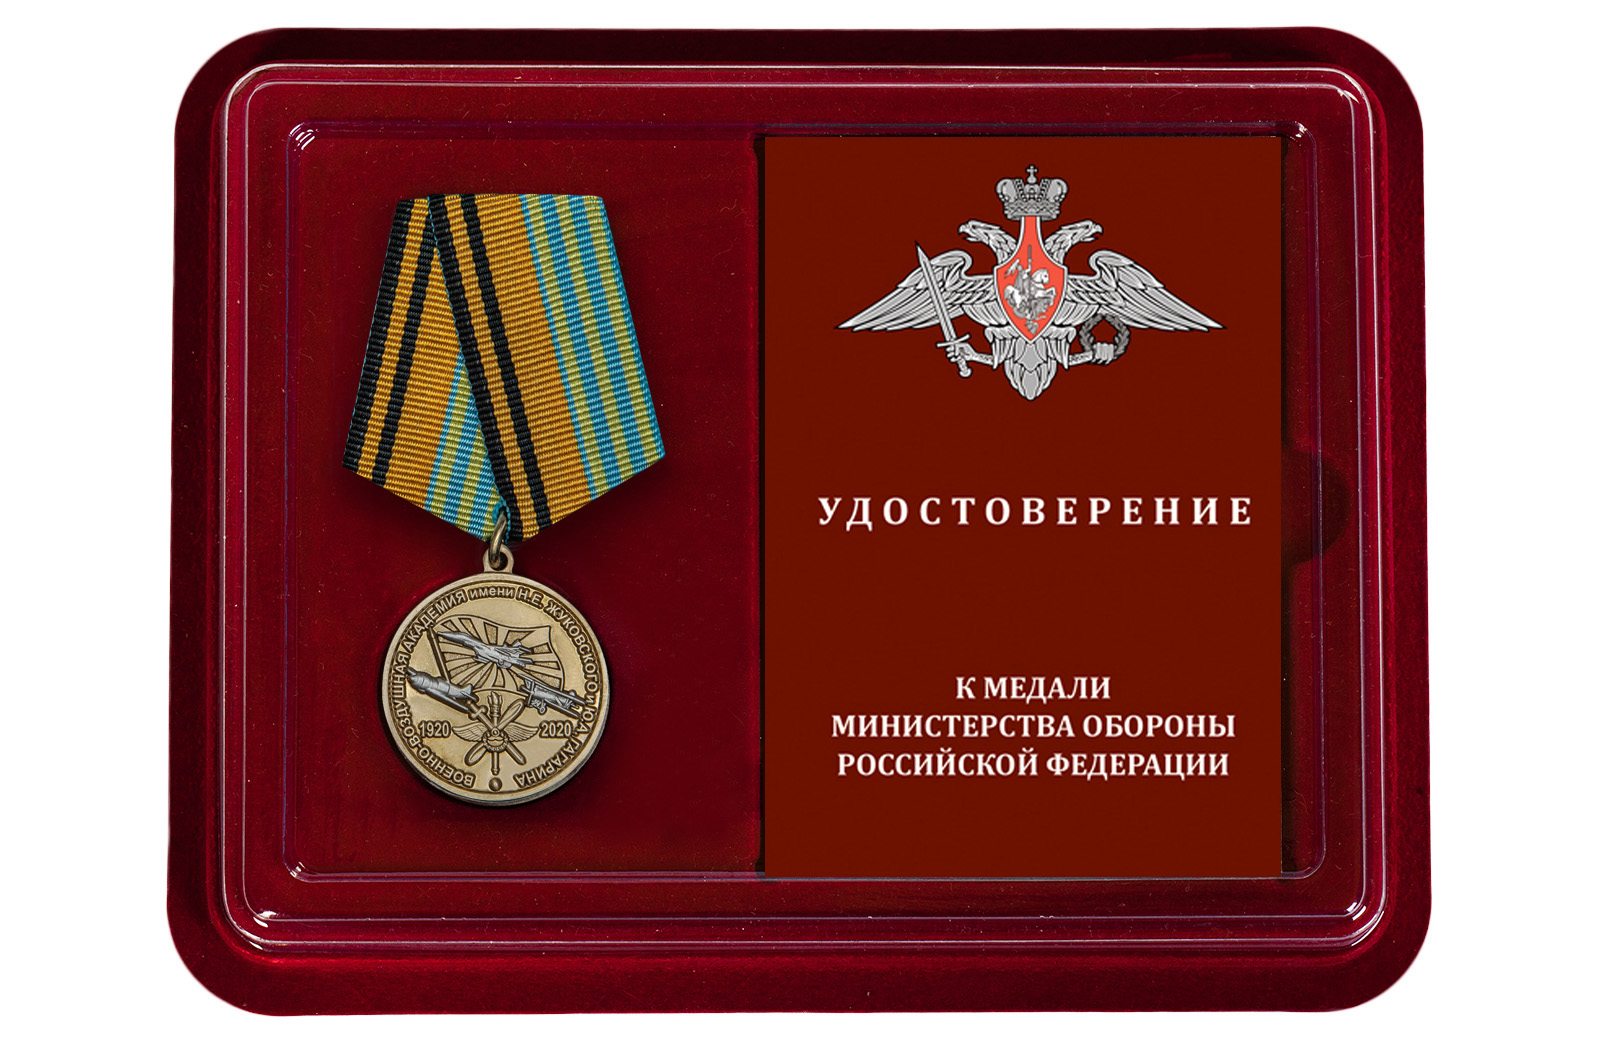 Купить медаль 100 лет Военно-воздушной академии им. Н.Е. Жуковского и Ю.А. Гагарина в подарок